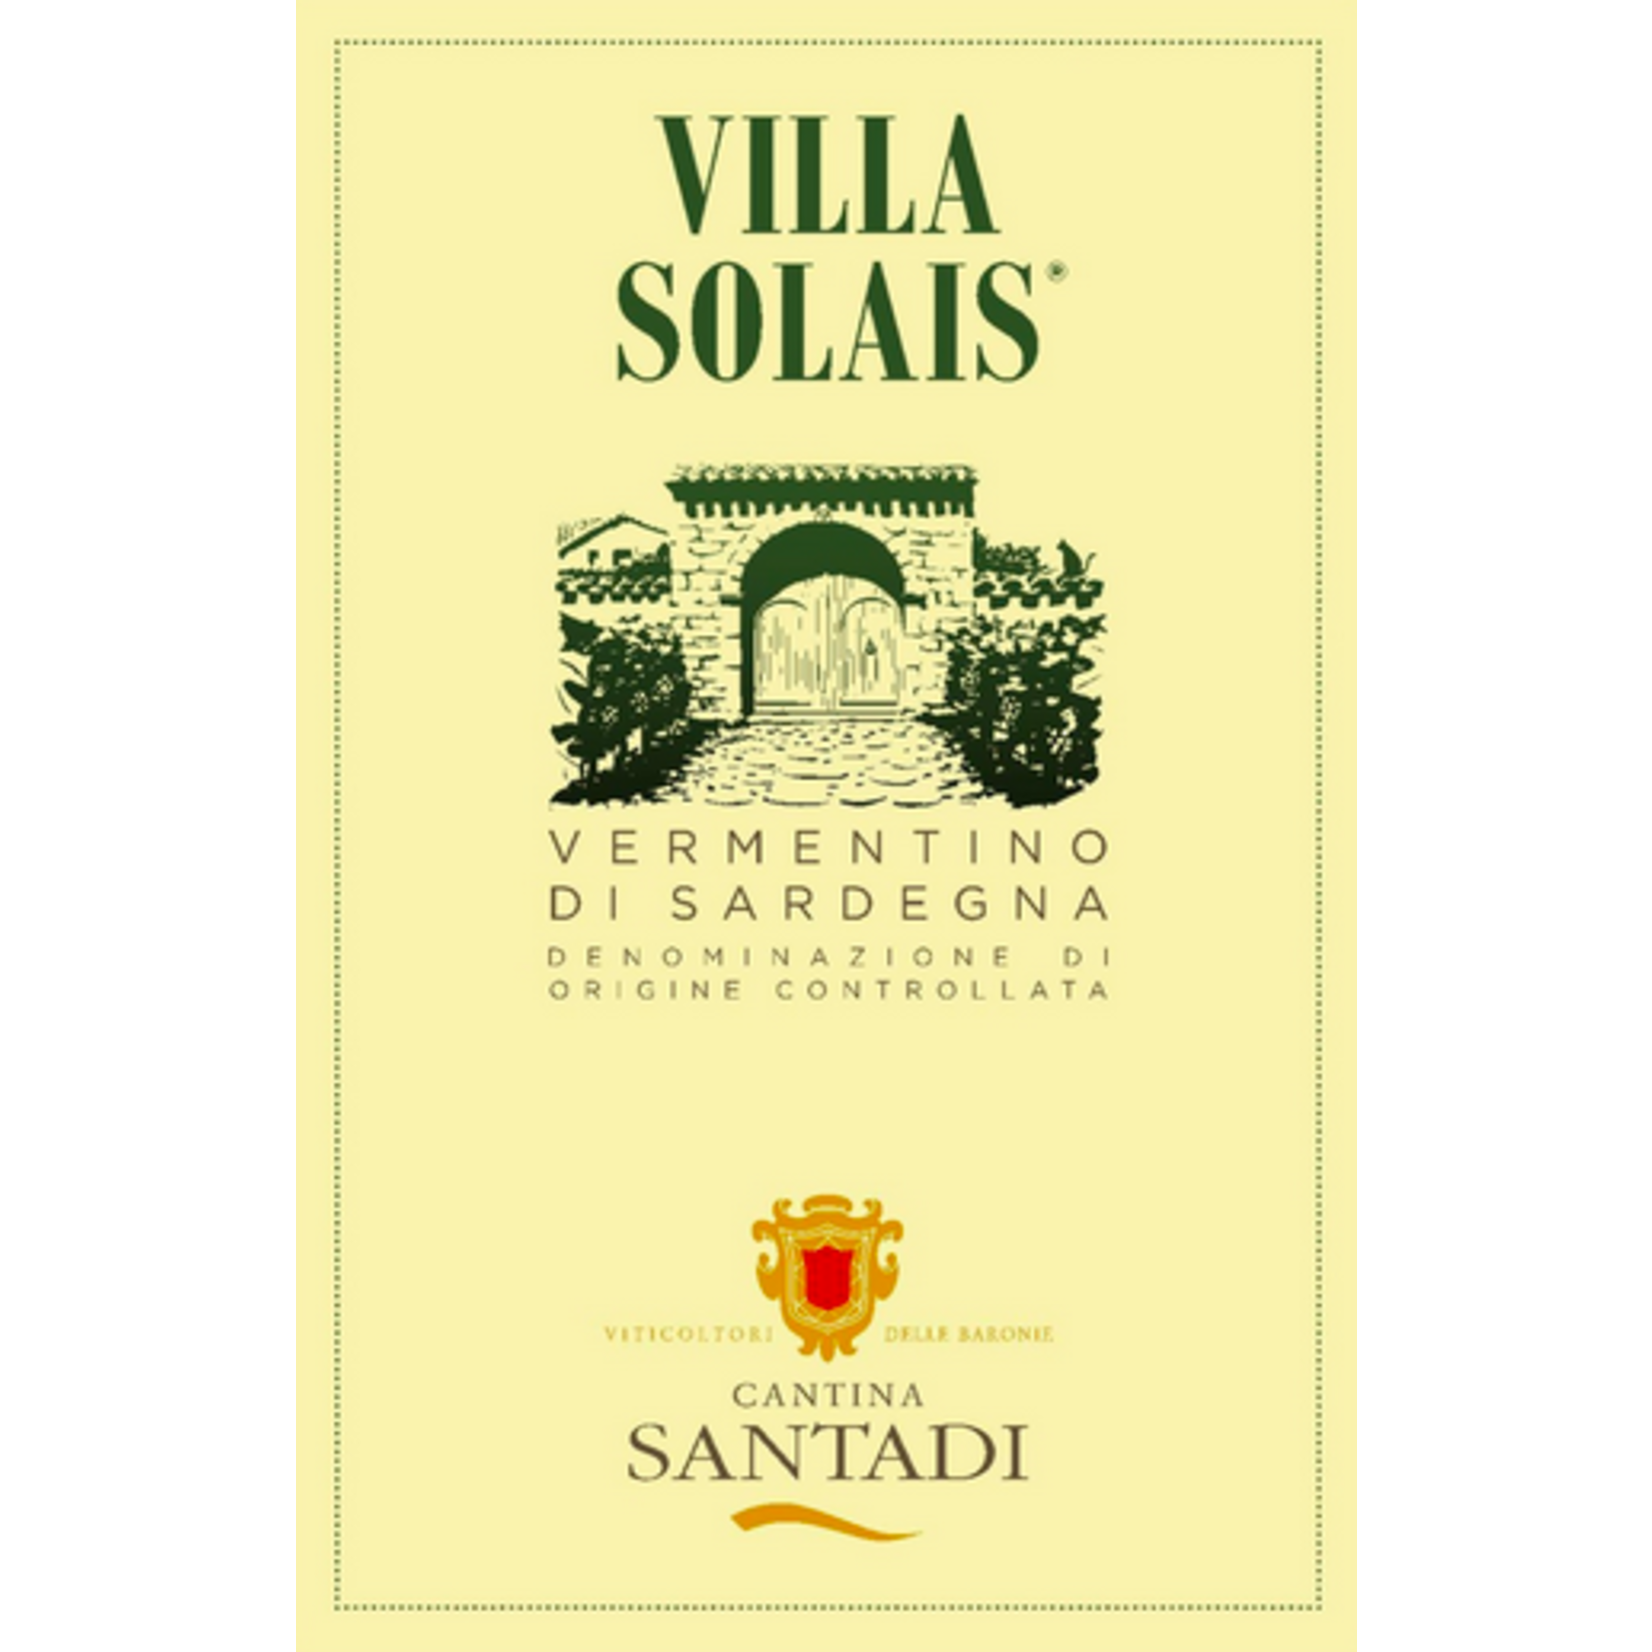 Cantina Santadi Cantina Santadi Vermentino Villa Solais  2020  Sardinia, Italy